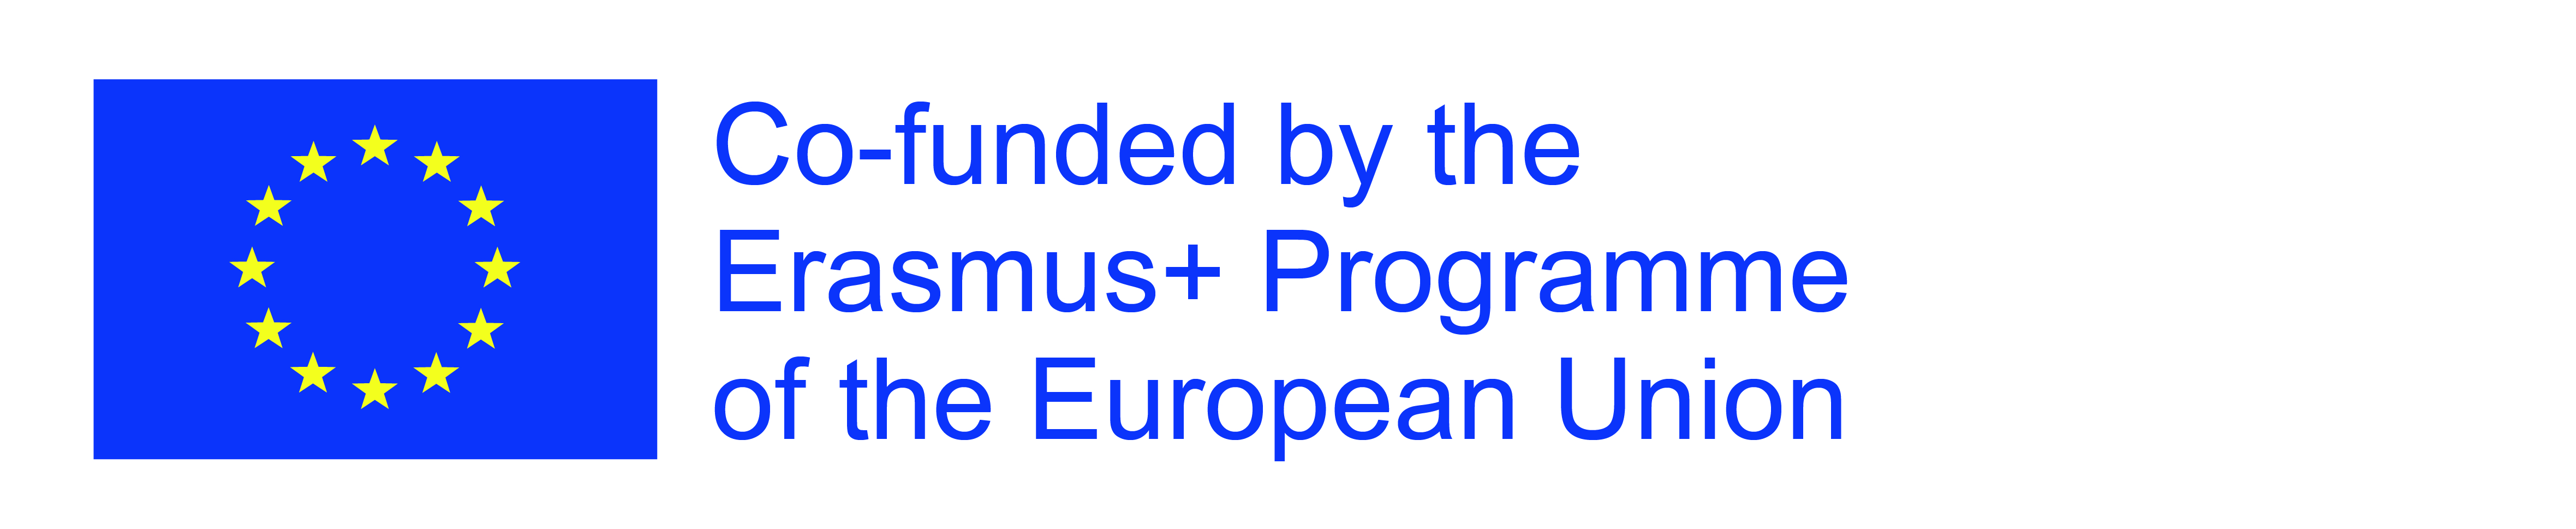 La UOC participa en una iniciativa europea per afavorir la cocreació de  coneixement per abordar problemàtiques socials